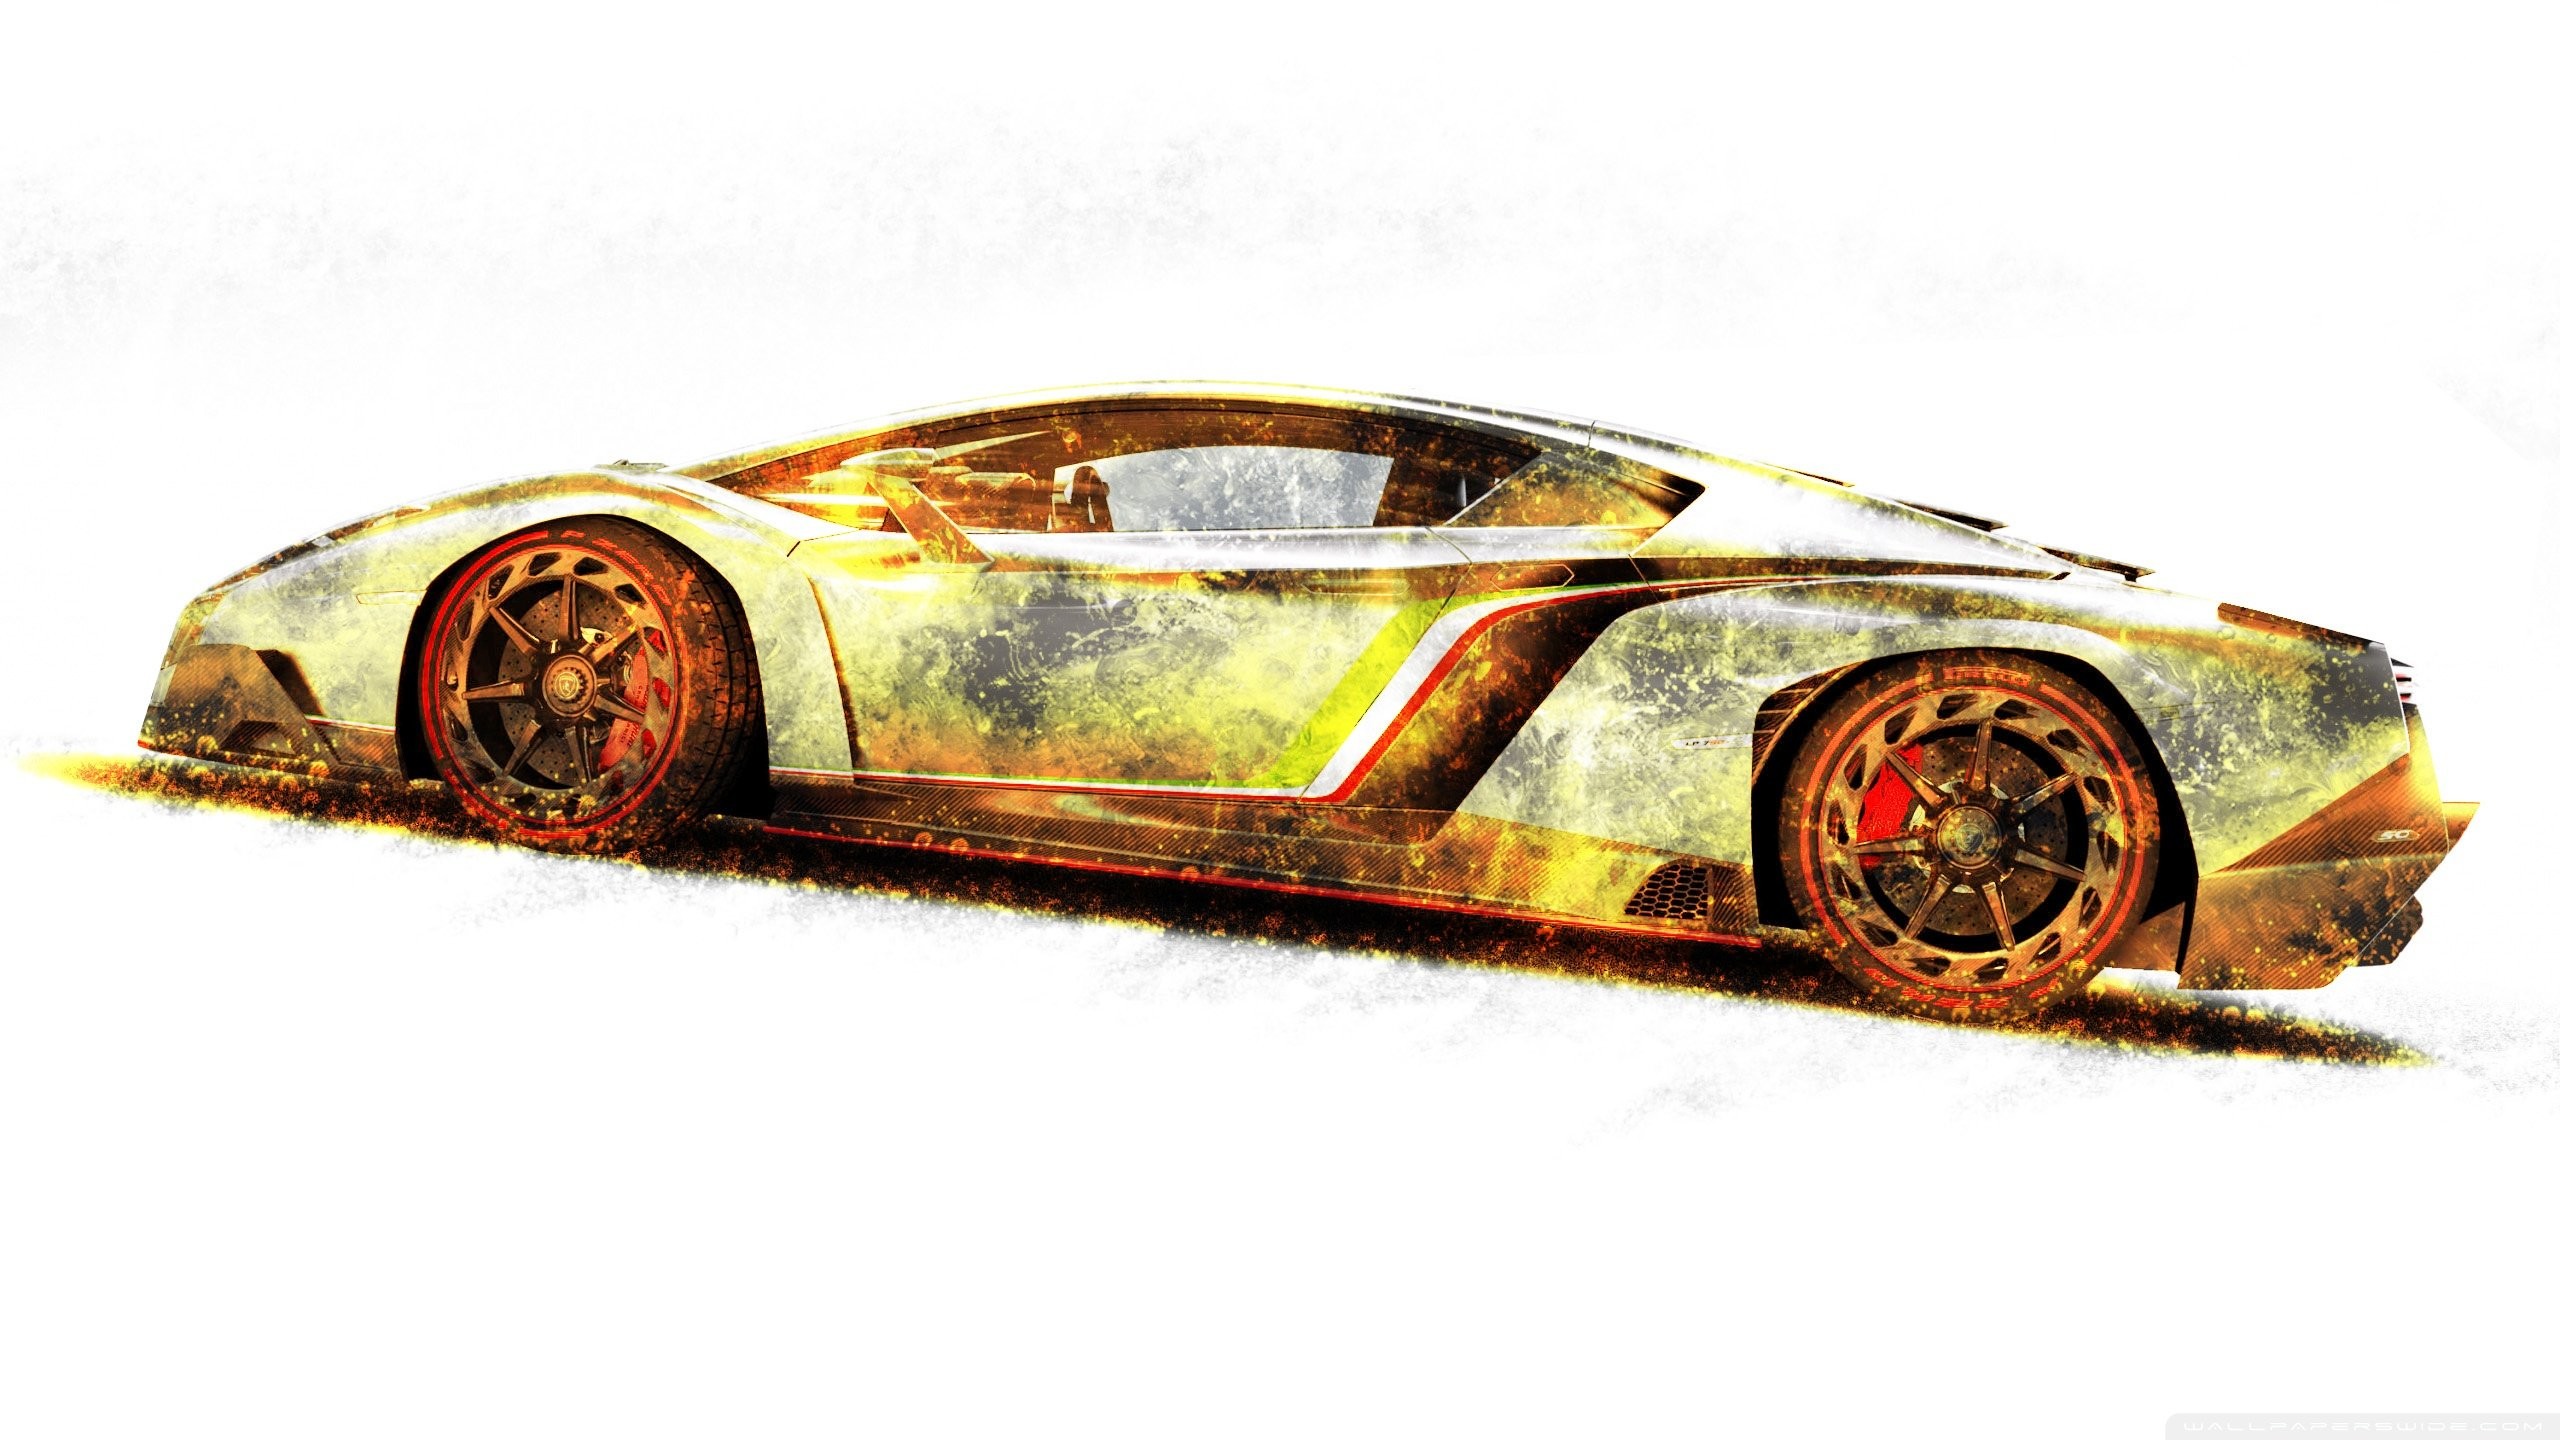 2560x1440, Lamborghini Veneno Gold Edition Wallpaper - Lamborghini Red And Gold - HD Wallpaper 